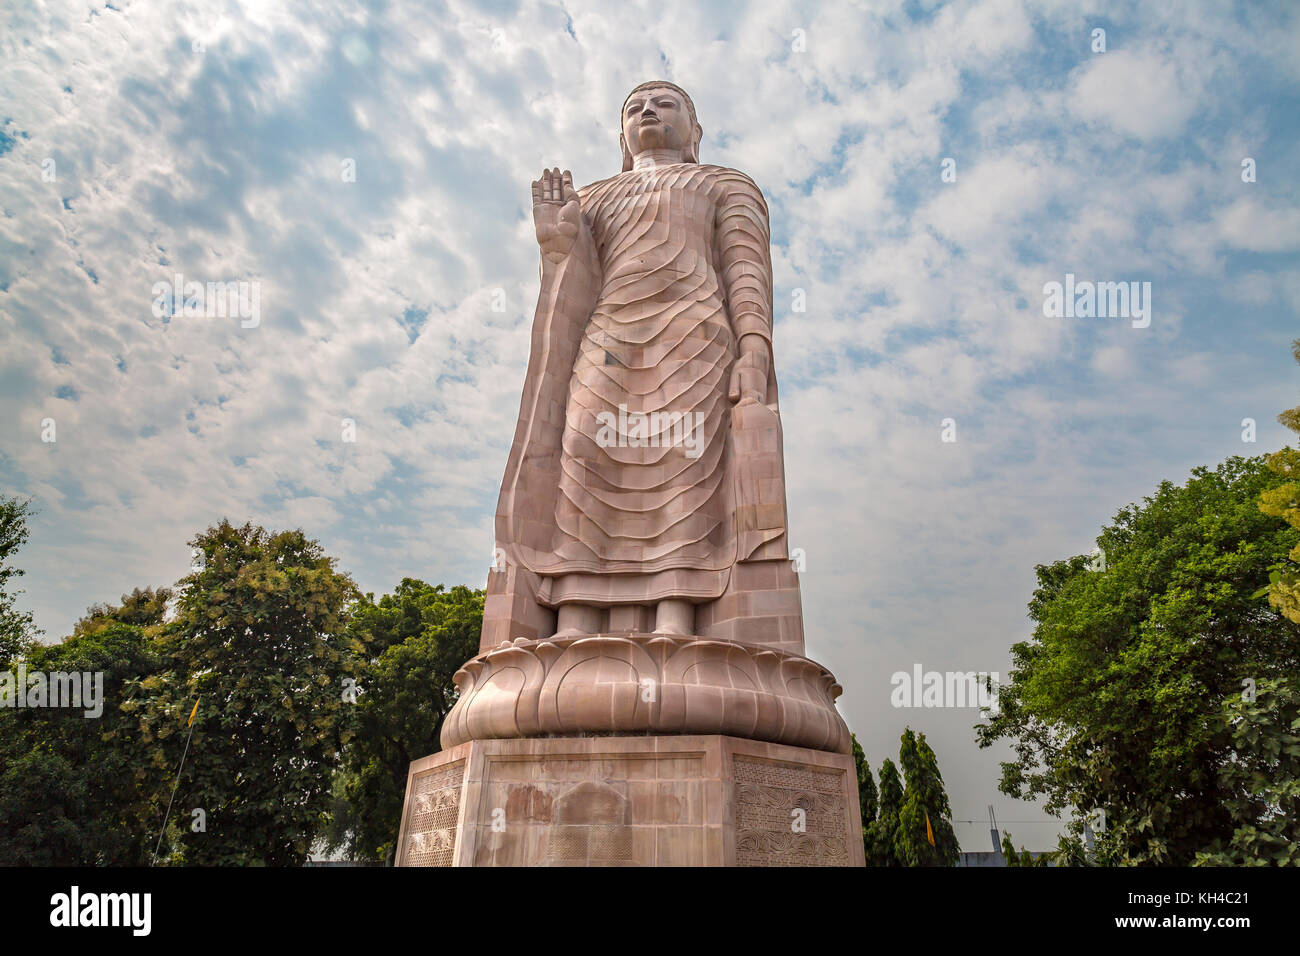 Gigantic sculpture of standing Buddha 80 feet tall at Wat Thai monastery Sarnath, Varanasi, India. Stock Photo